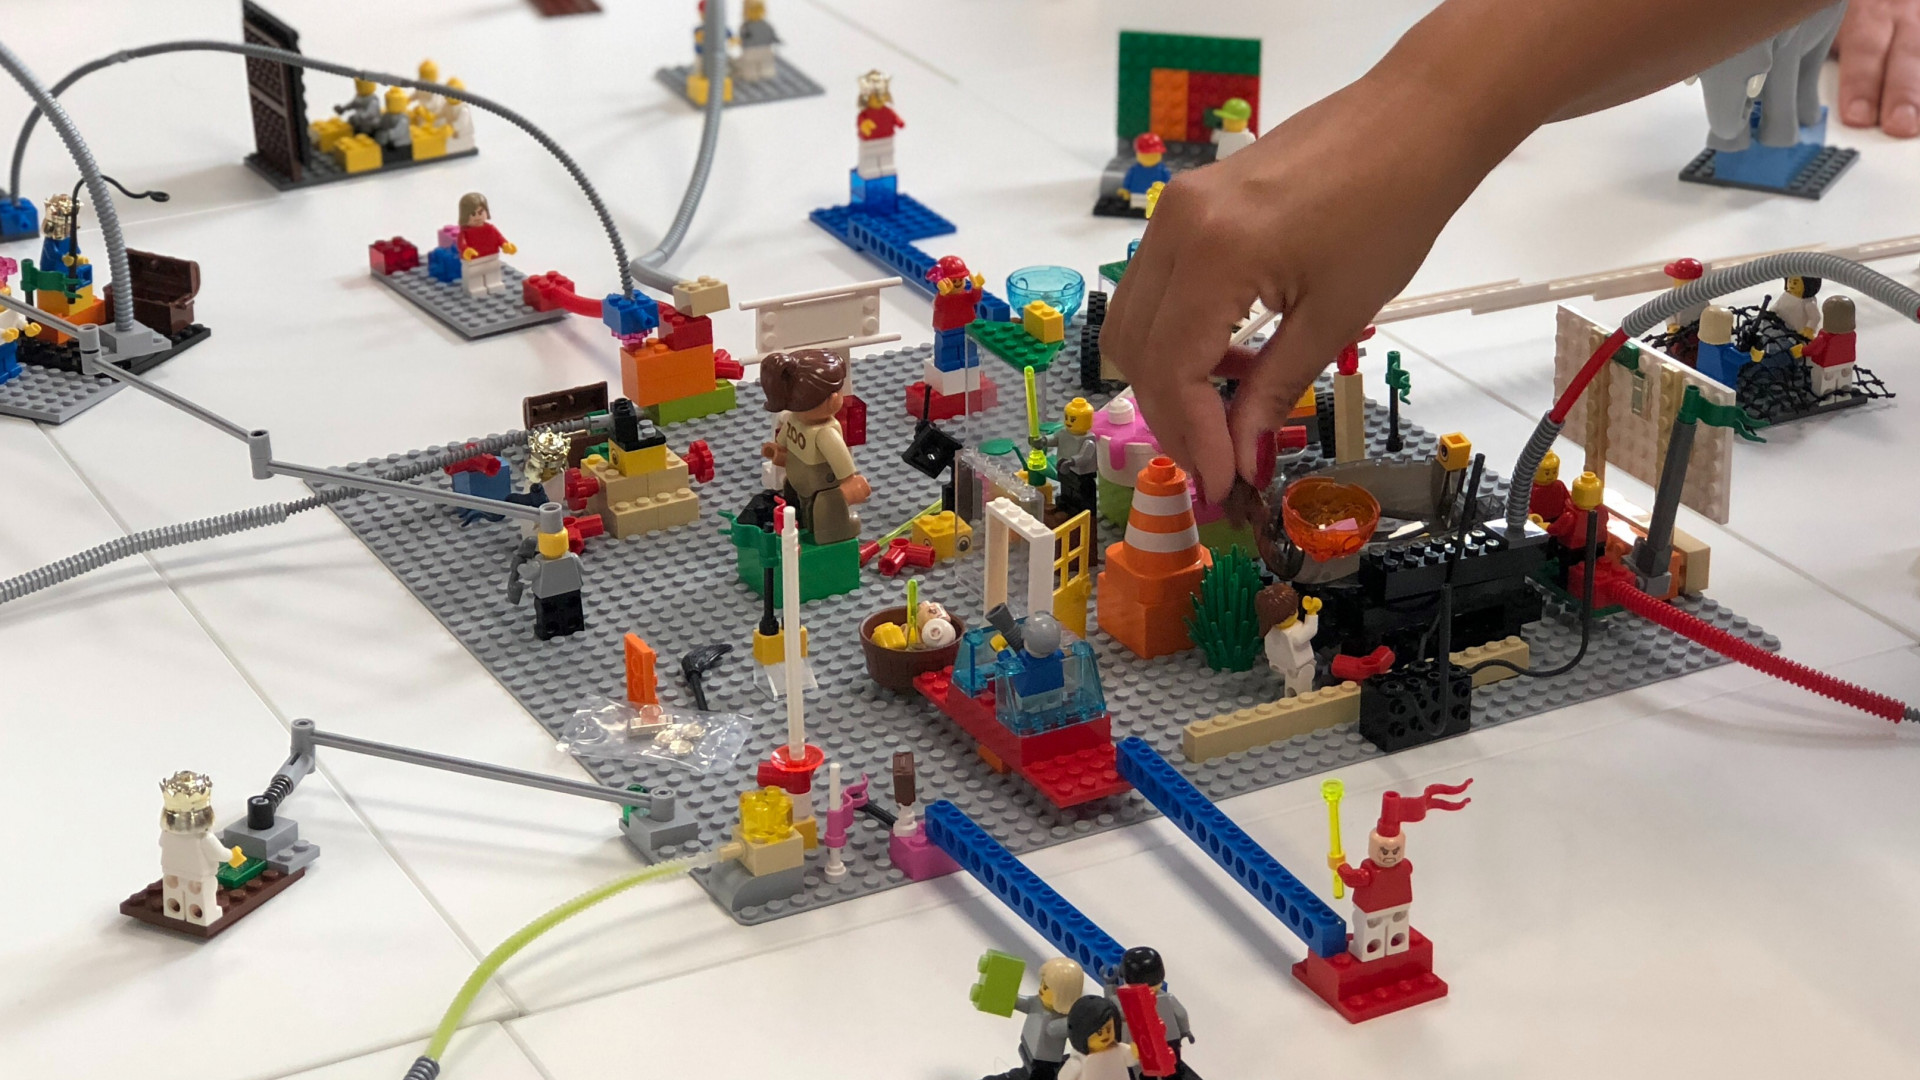 Eine Hand greift nach einer Lego-Figur, die sich auf einer Platte mit unterschiedlichen Aufbauten und Figuren befindet.